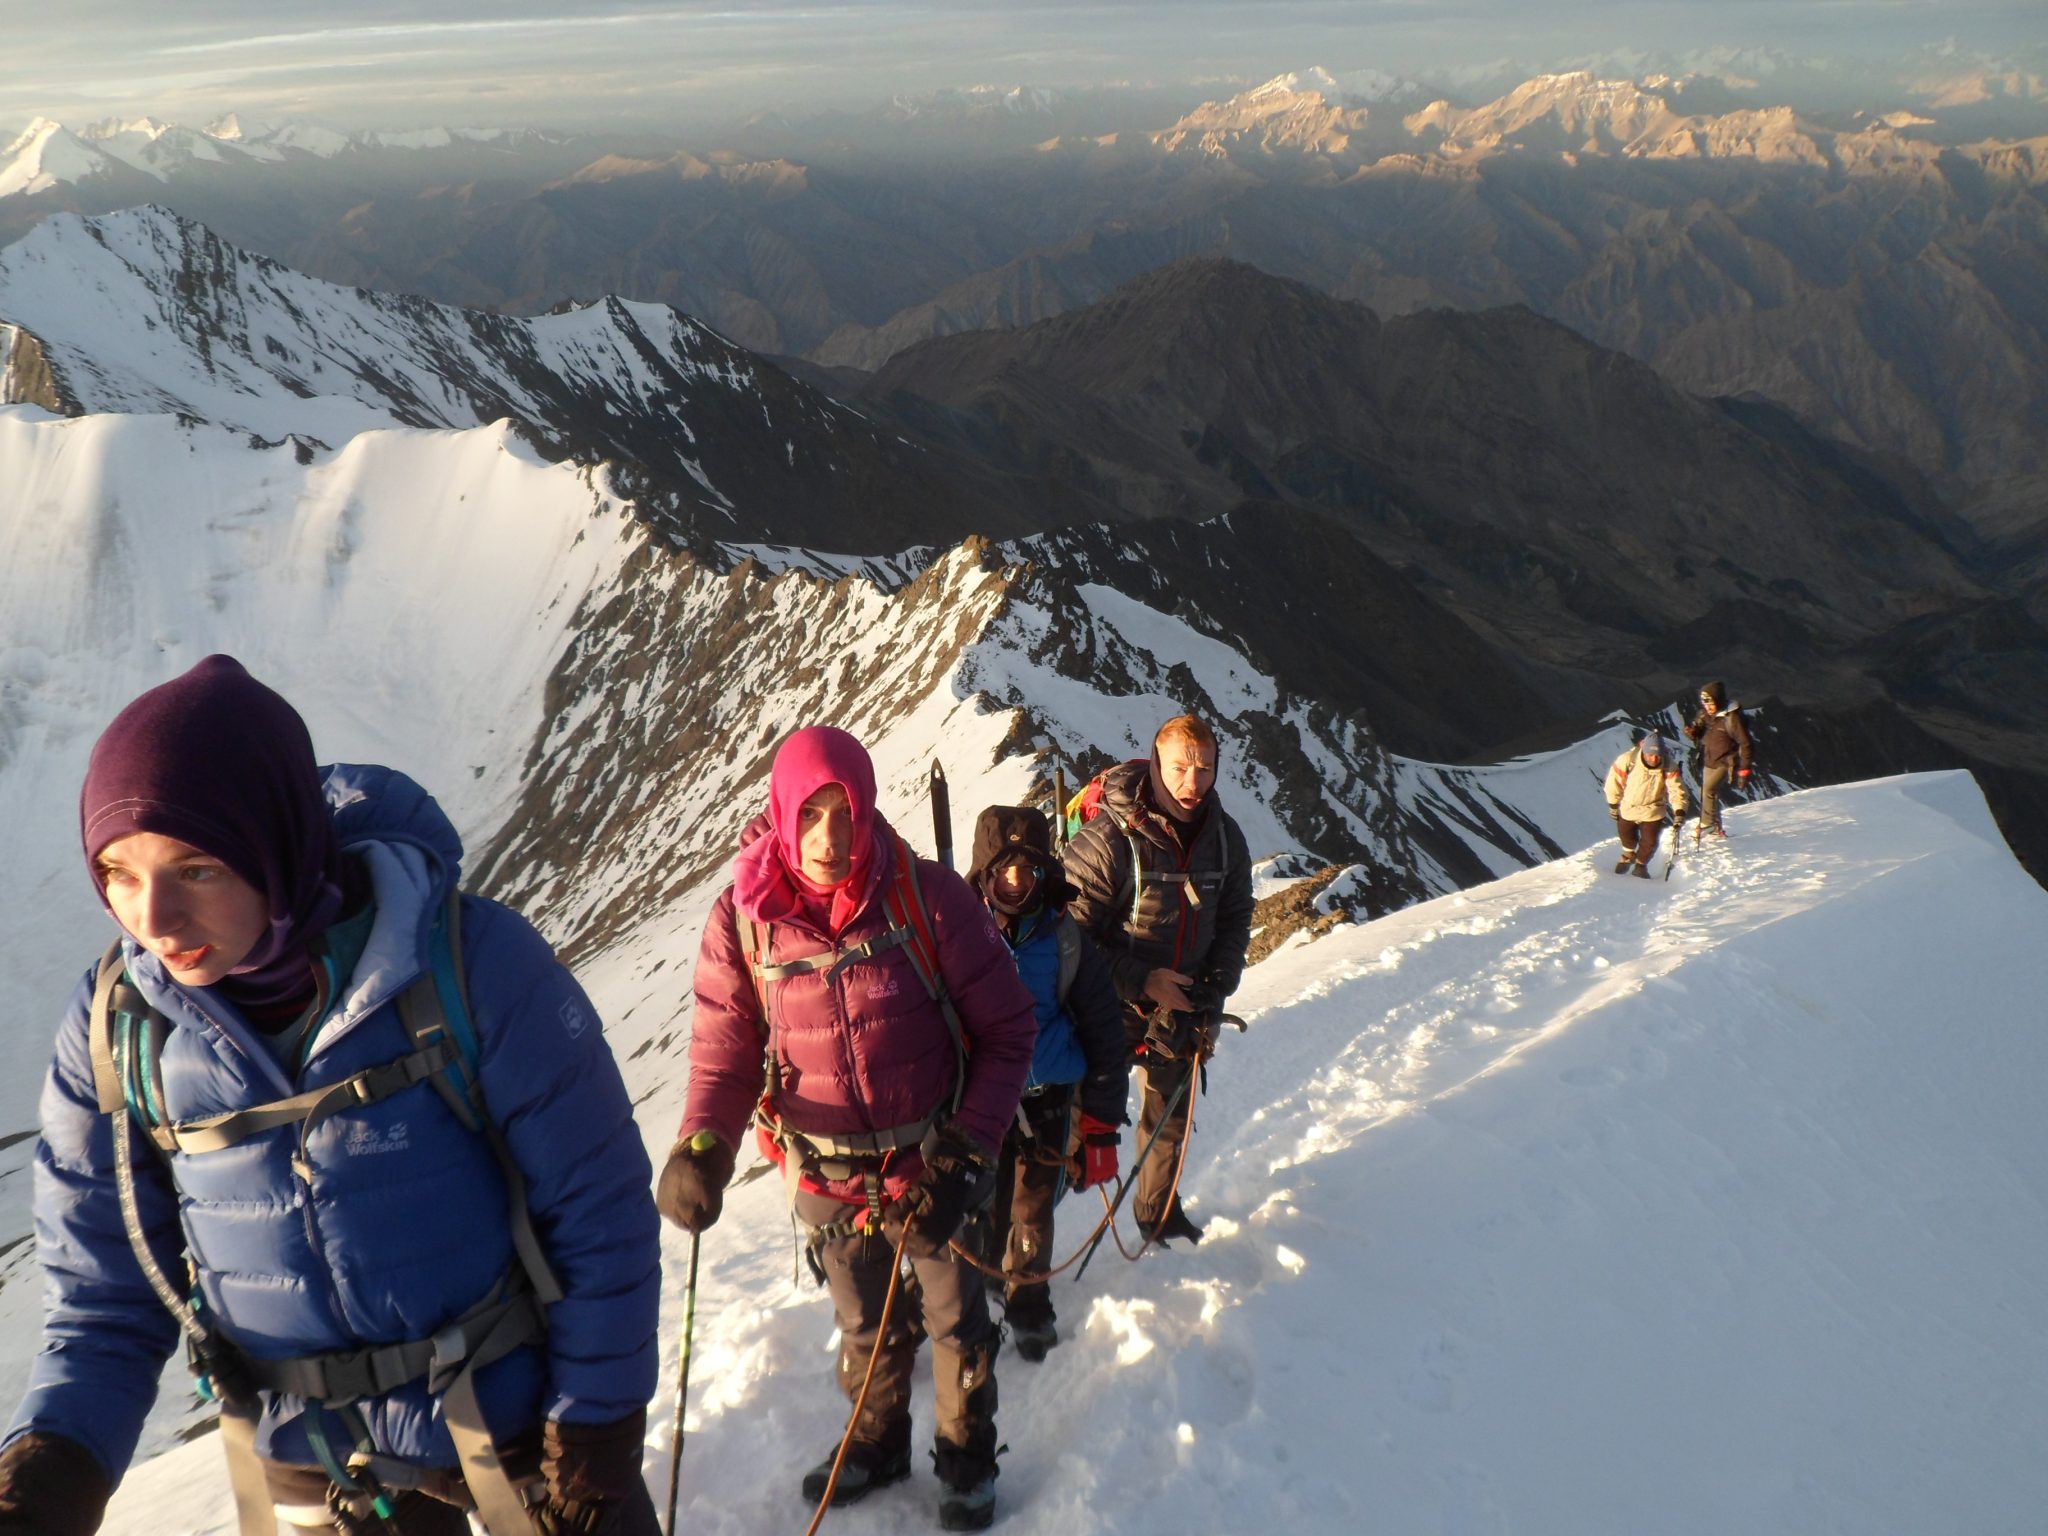 Stok Kangri Summit: A 9-Day Himalayan Expedition